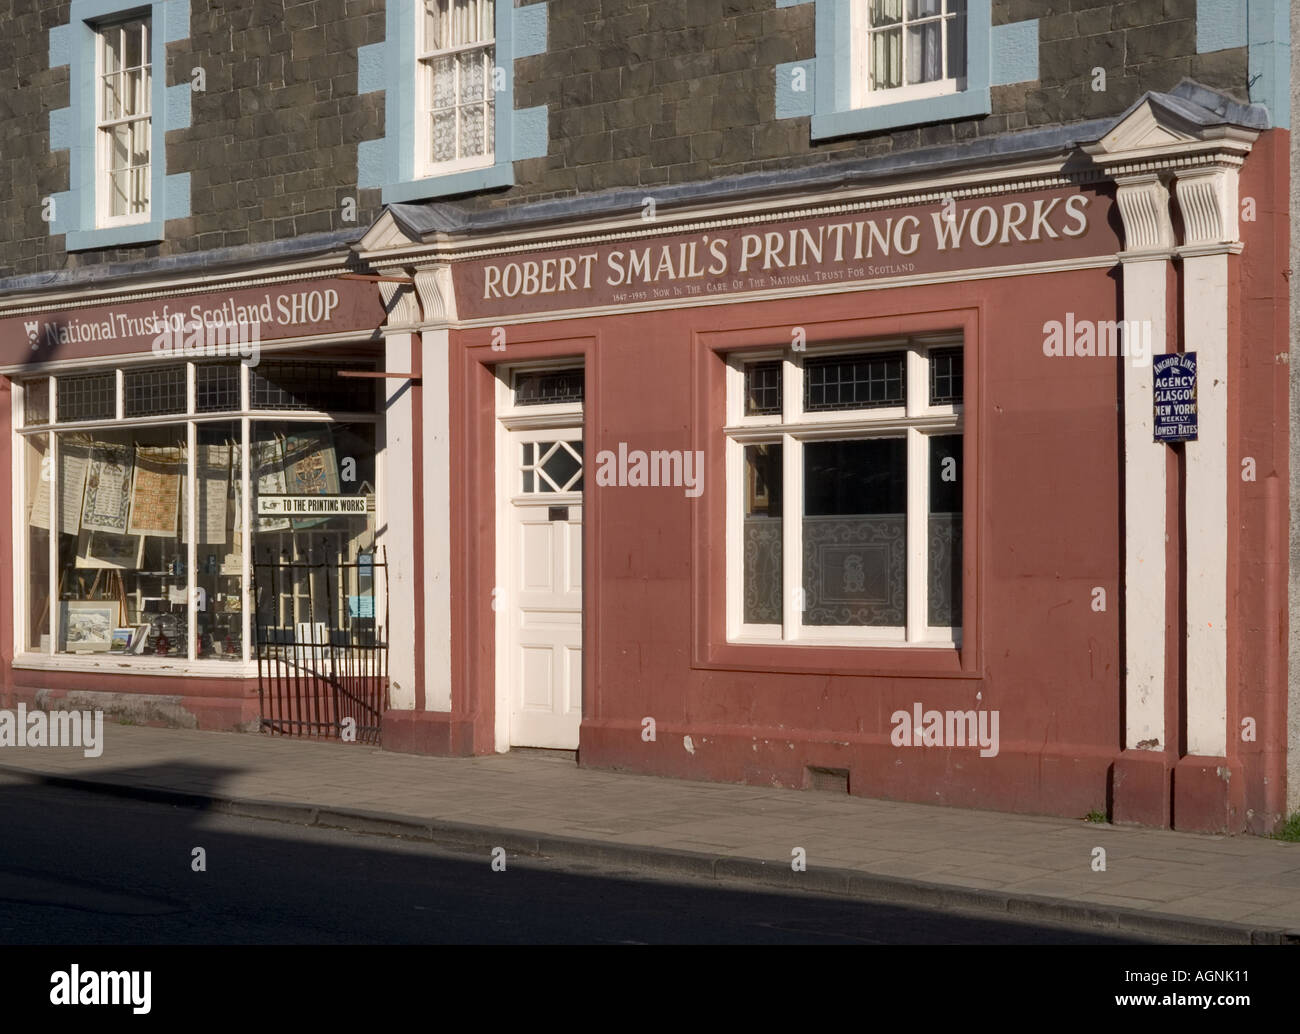 Robert Smails stampa di opere tipografiche conservate opere in Innerleithen Scottish Borders Regno Unito - fotografata da strada pubblica Foto Stock